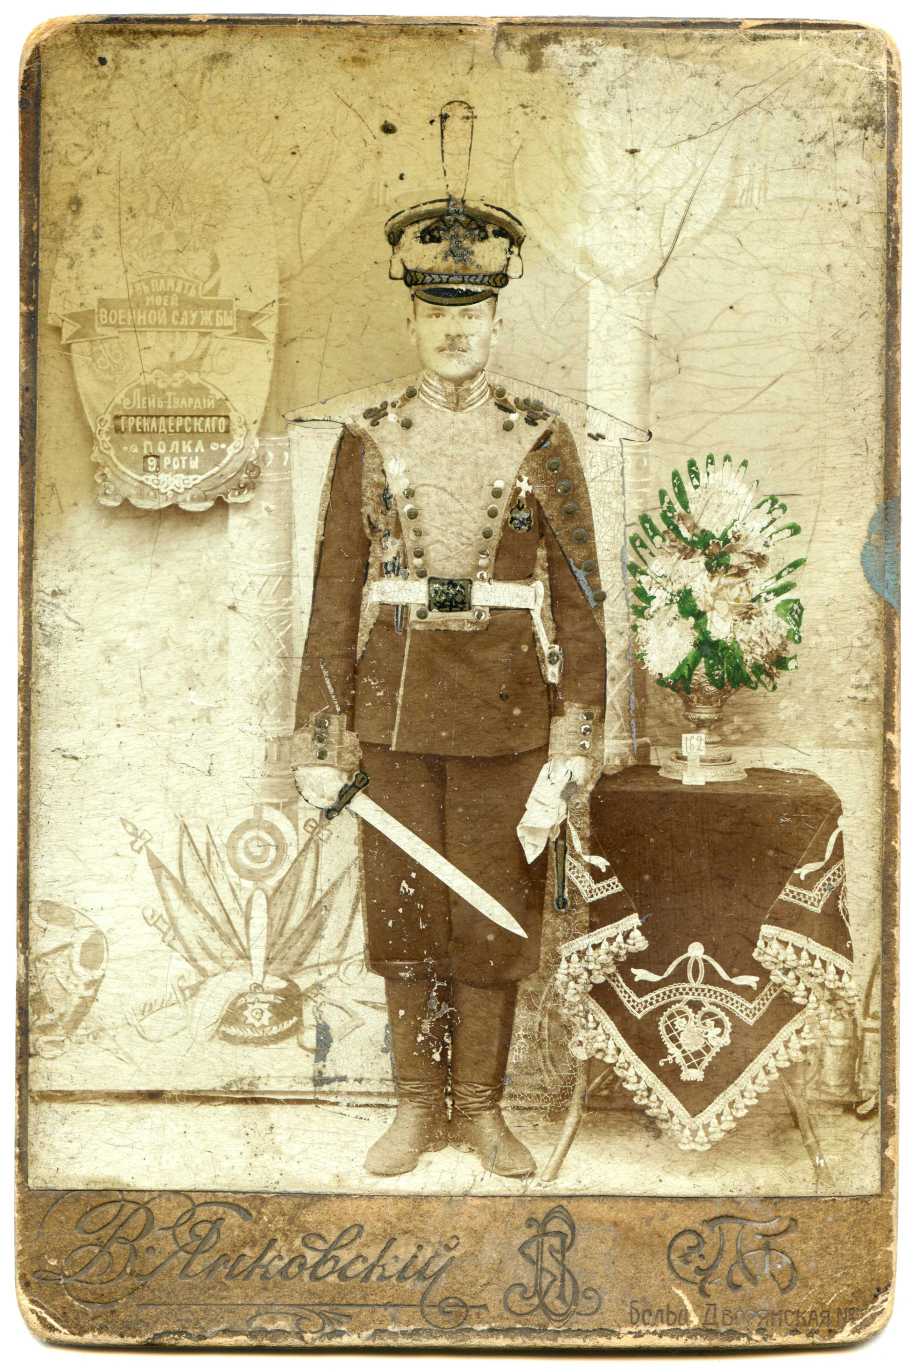 Гренадерский принца фридриха нидерландского полк